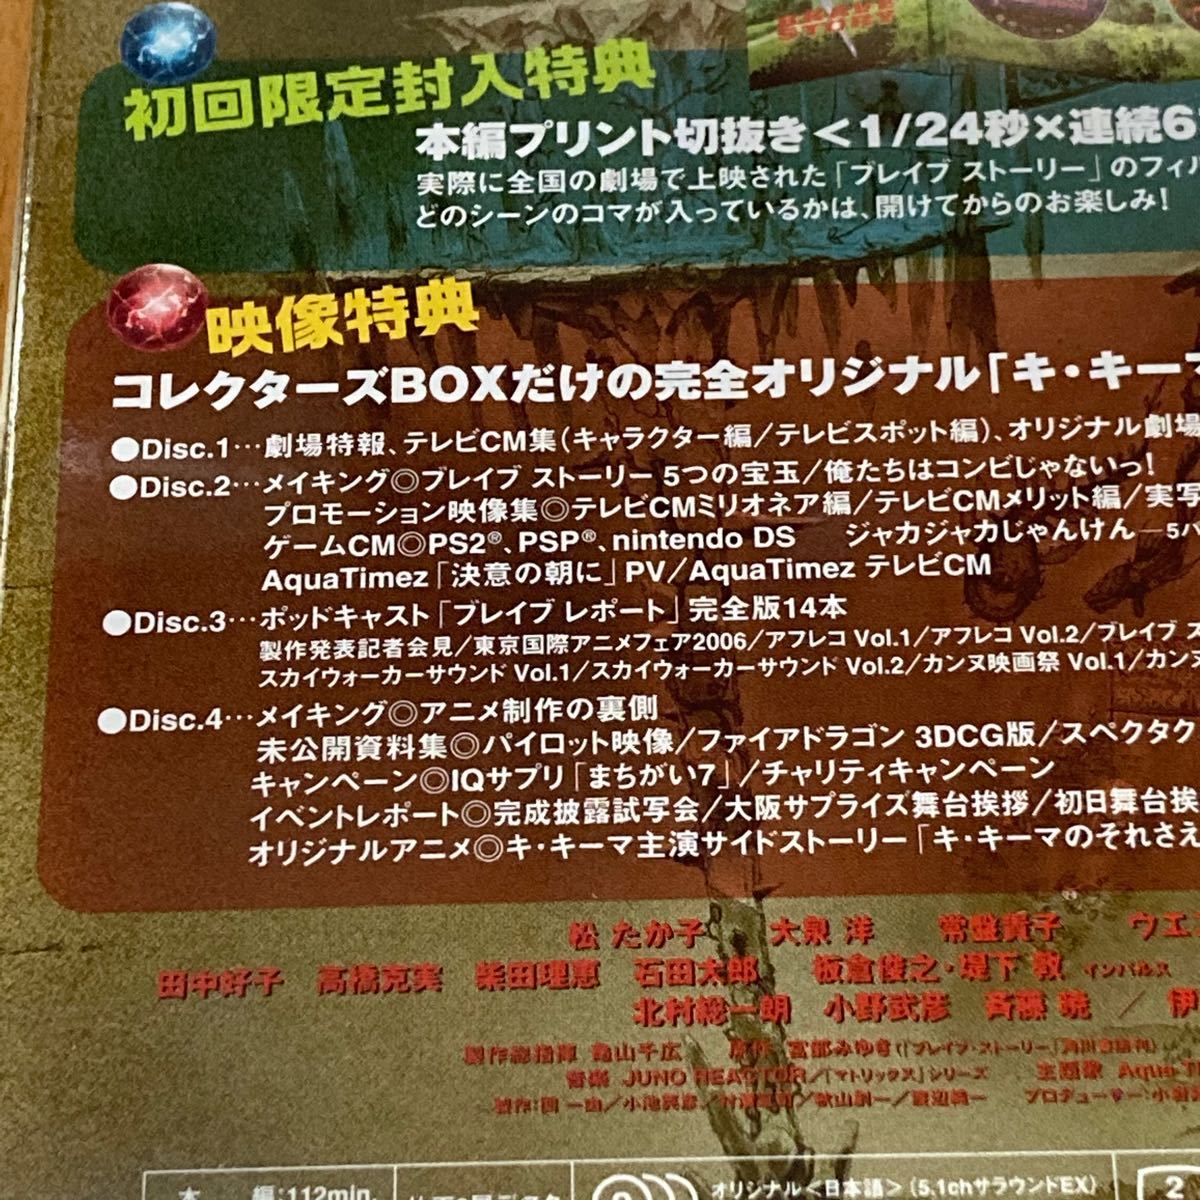 ブレイブ ストーリー コレクターズBOX【4DVD】初回限定生産